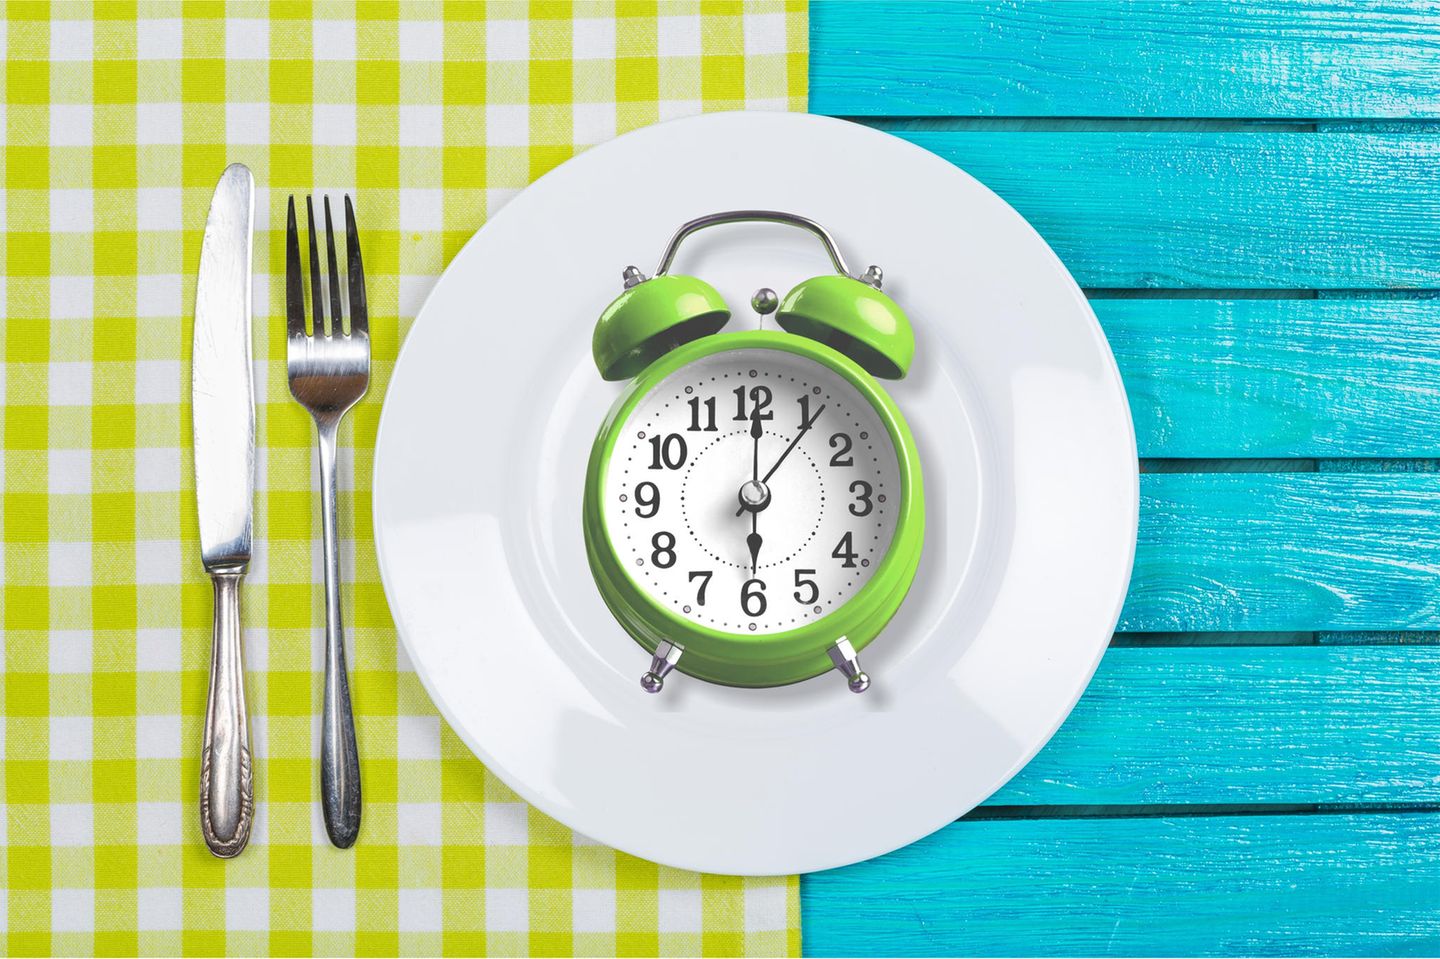 Alternierendes Fasten – Uhr auf einem Teller